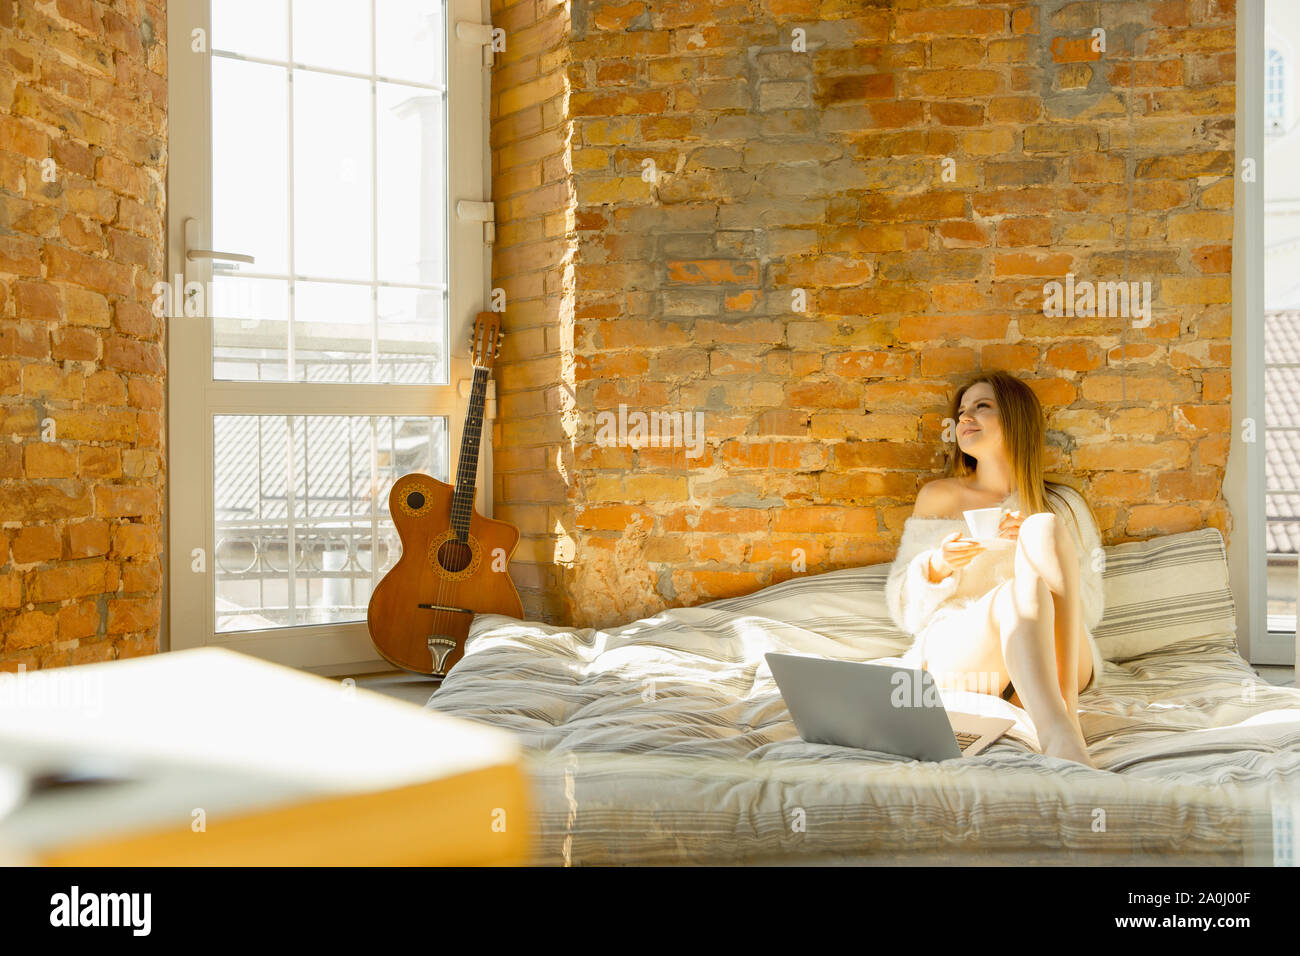 Entspannt zu Hause. Schöne junge Frau liegt auf Matratze mit warmen Sonnenlicht. Kaukasische blonde female model hat am Wochenende Zeit zum Ausruhen. Arbeiten an Ihrem Laptop und lächelnd. Die blog oder Surfen. Stockfoto